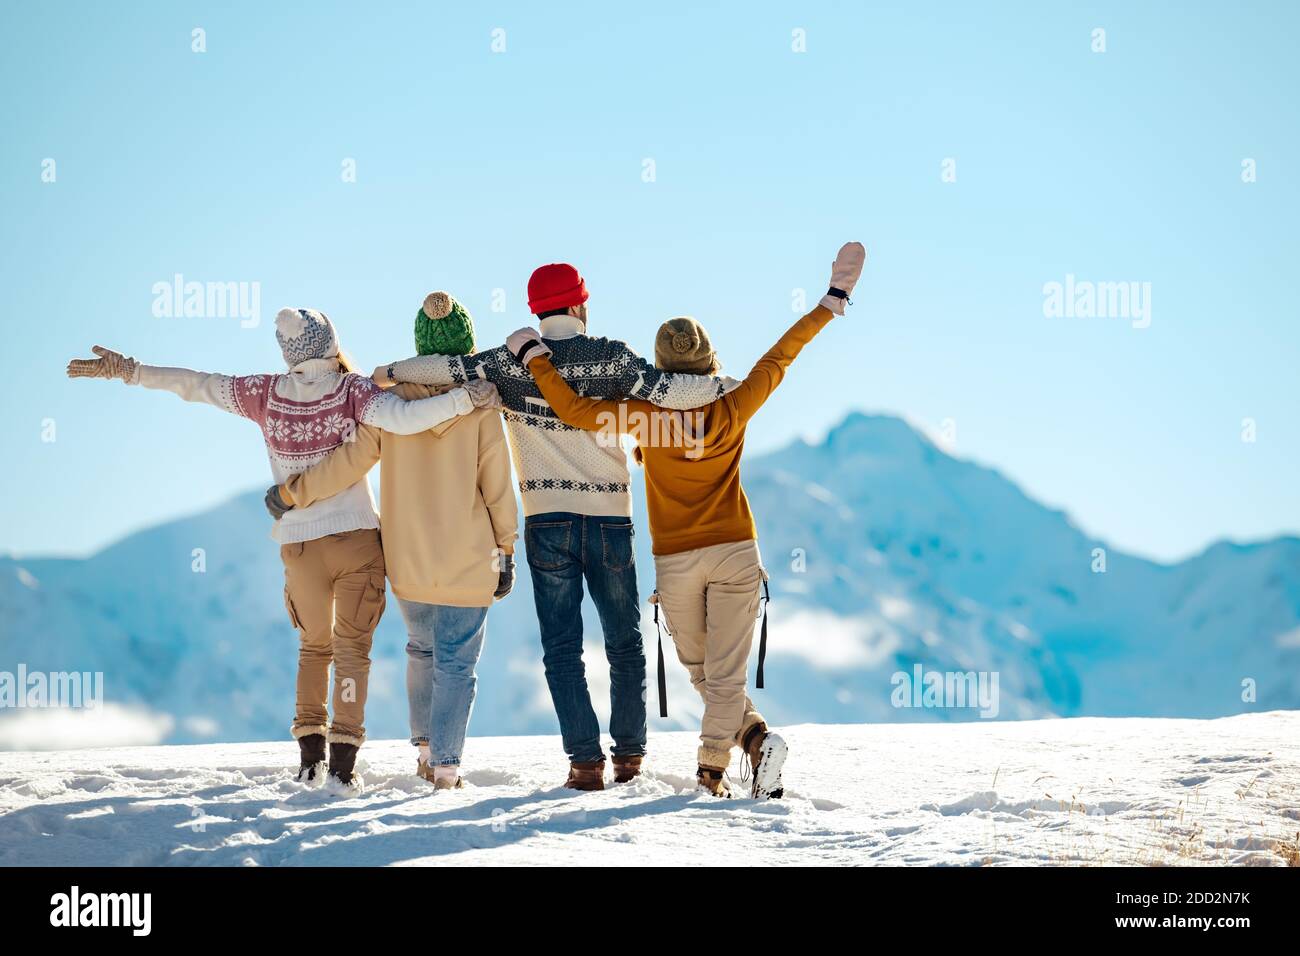 Quatre amis heureux se tiennent debout et s'embrassent contre des montagnes enneigées par temps ensoleillé. Concept vacances d'hiver Banque D'Images